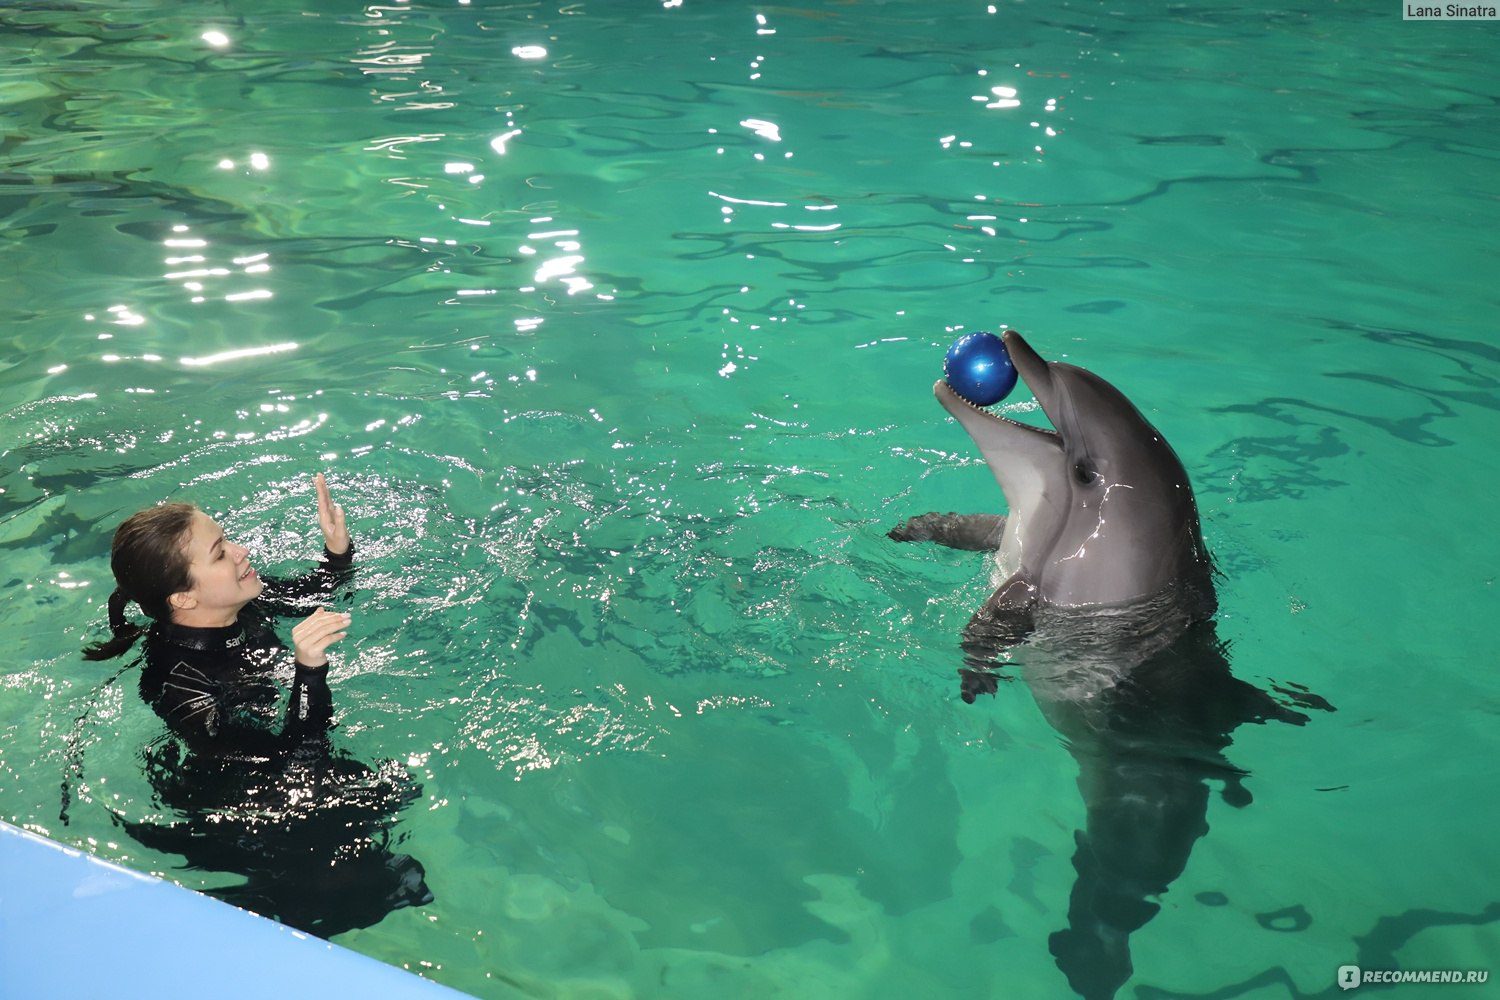 дельфины дарят своим дамам букеты водорослей...